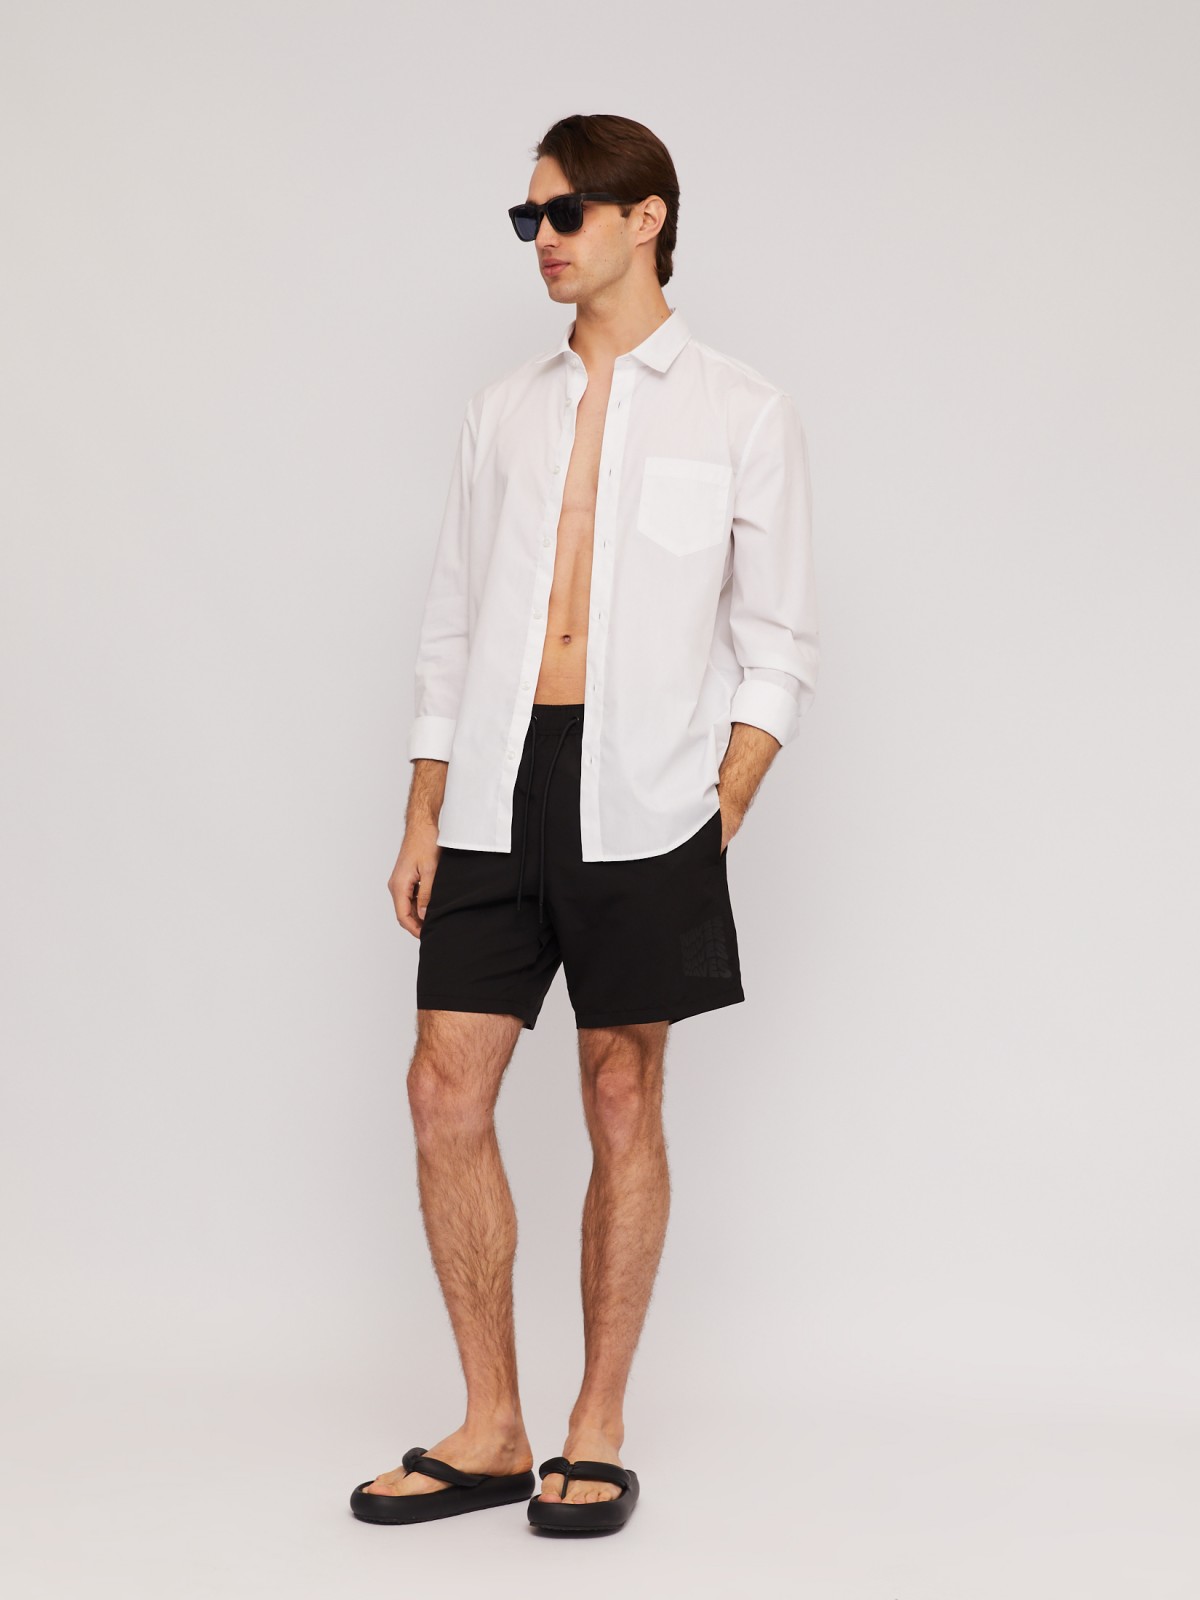 Пляжные шорты (для плавания) zolla N14247S39043, цвет черный, размер S - фото 2